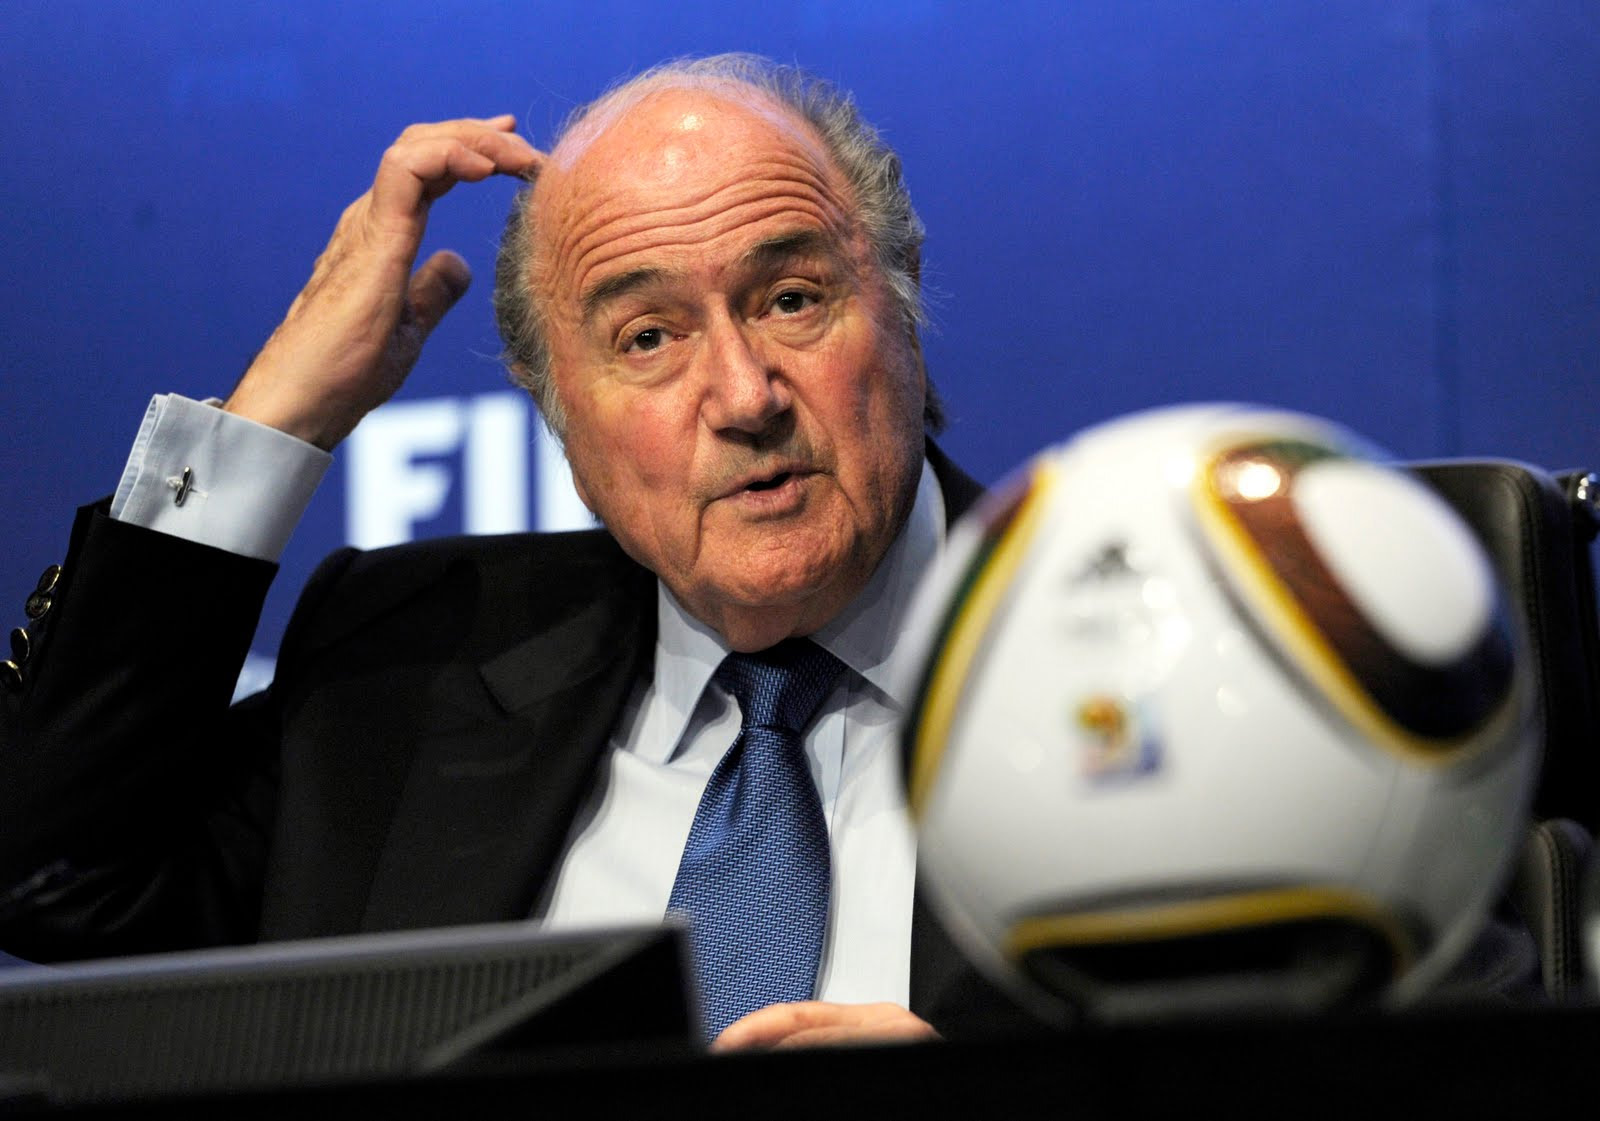 Scandalo Fifa, Blatter riconfermato spara a zero su Uefa e Usa: “Gli americani erano candidati per la Coppa del Mondo 2022 e hanno perso”